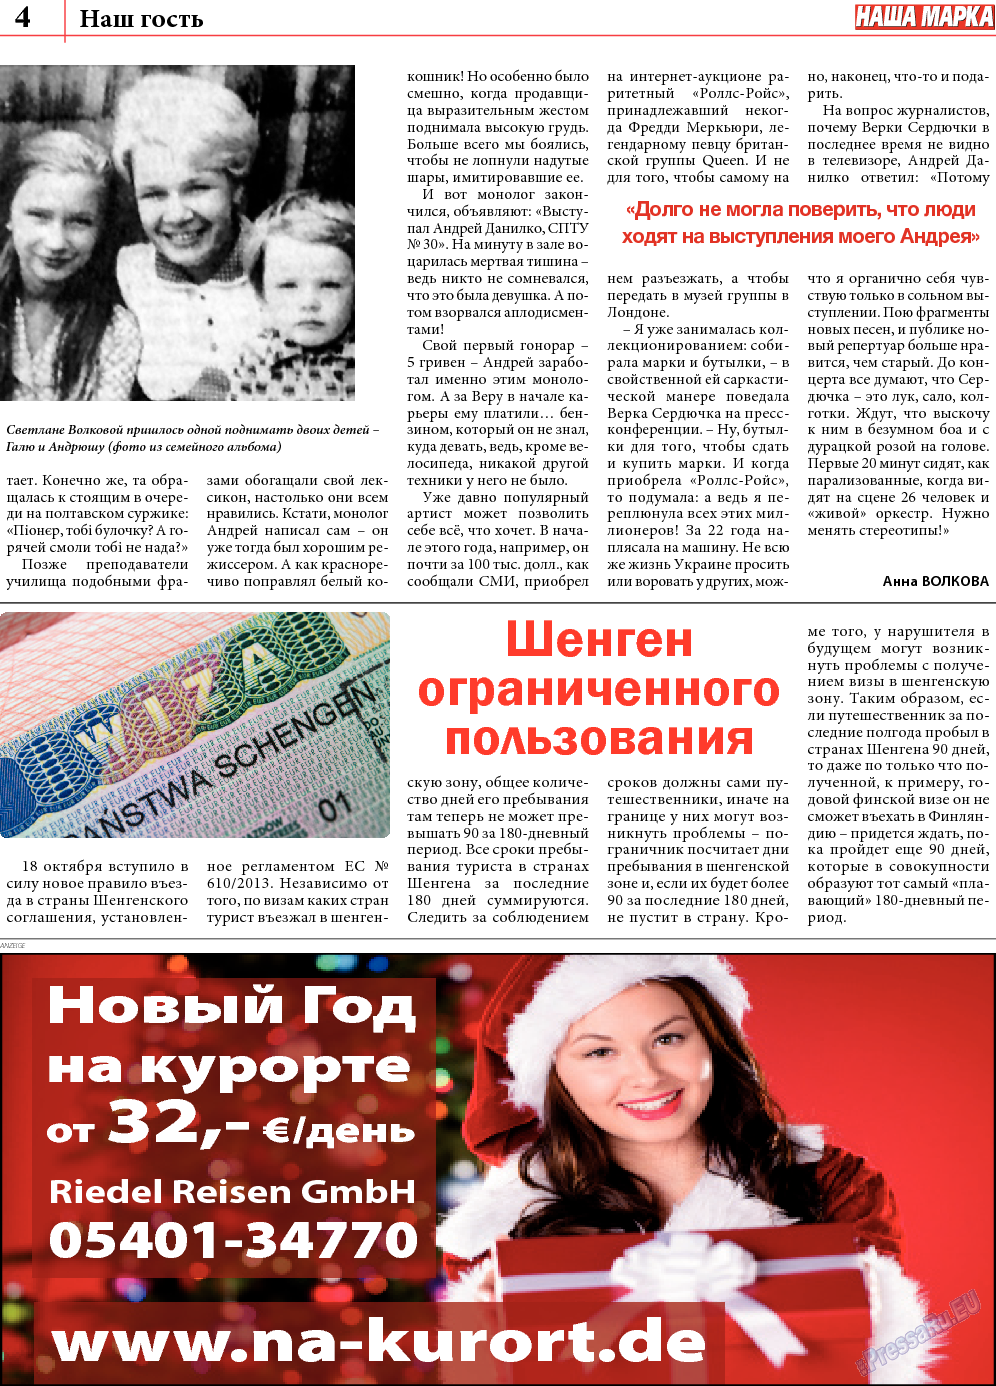 Наша марка (газета). 2013 год, номер 11, стр. 4